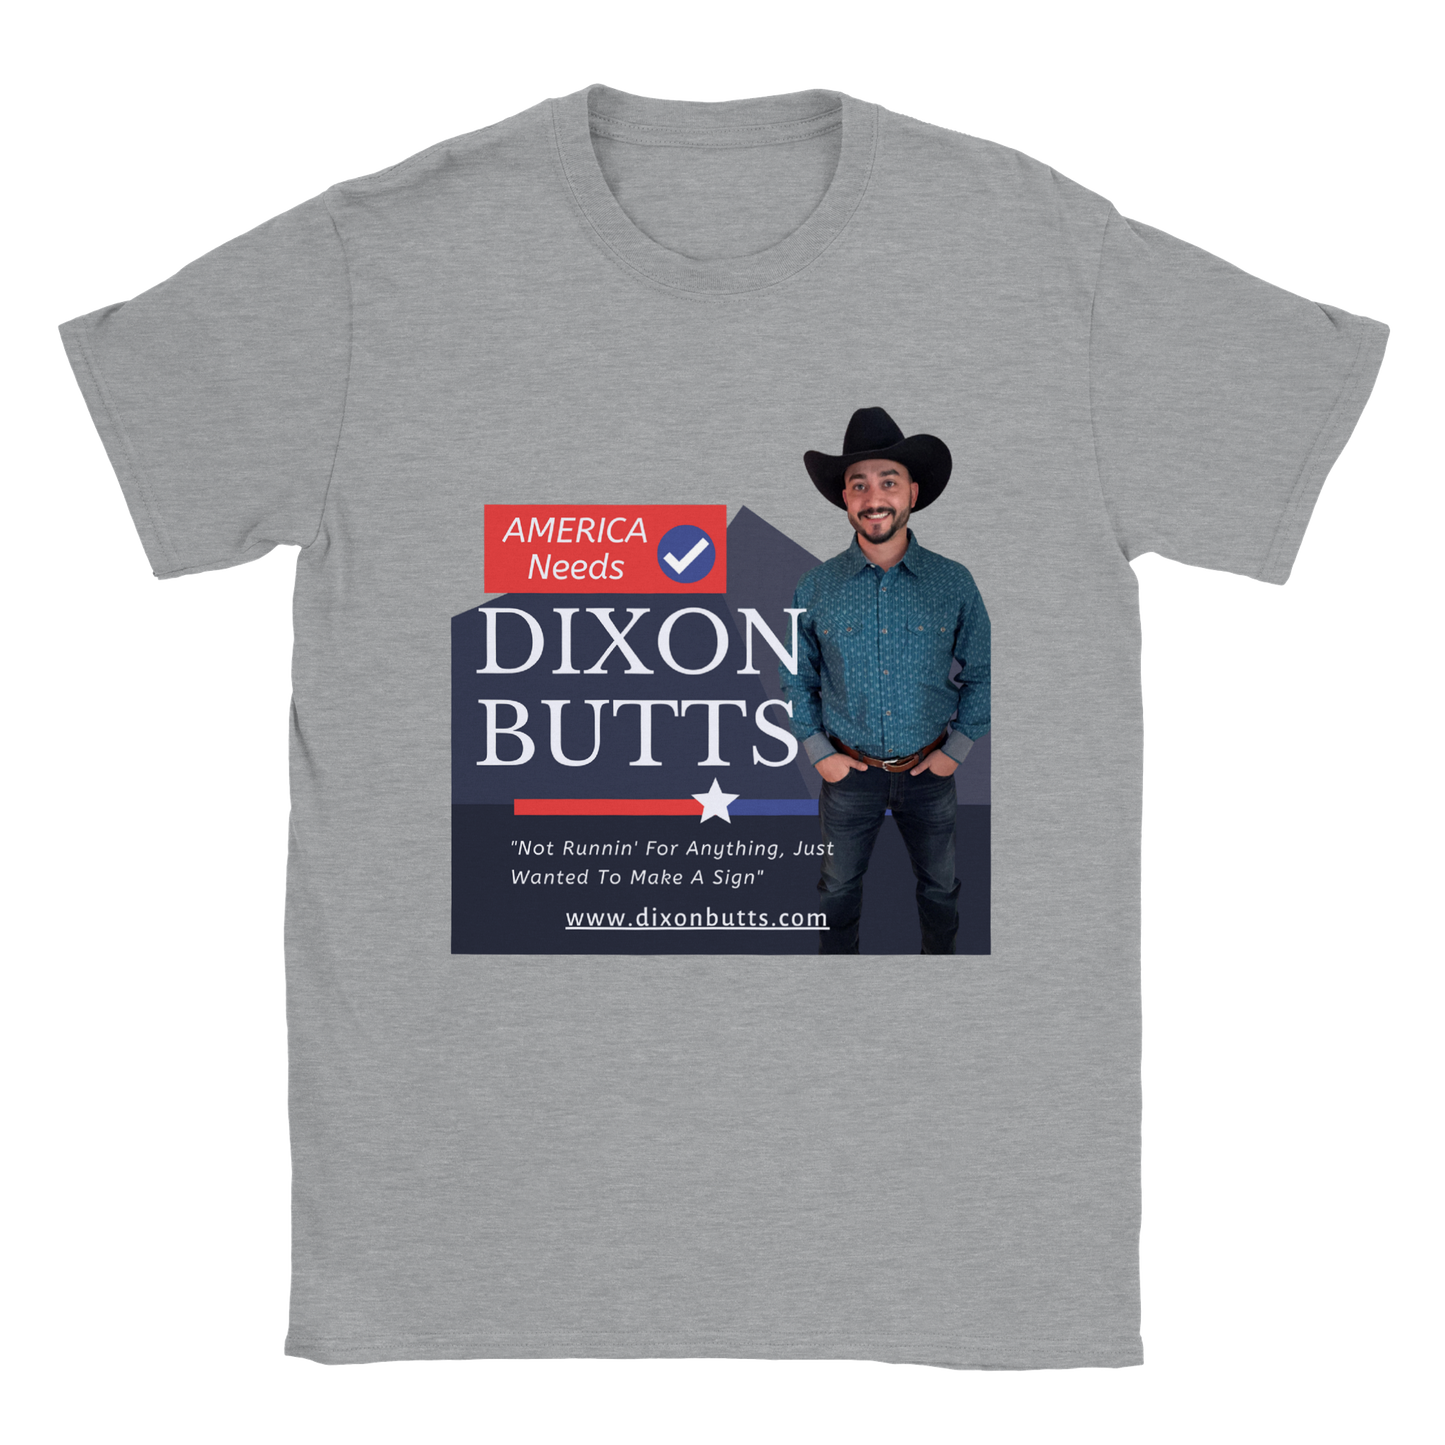 AMERICA NEEDS DIXON BUTTS - Crewneck Tee Shirt